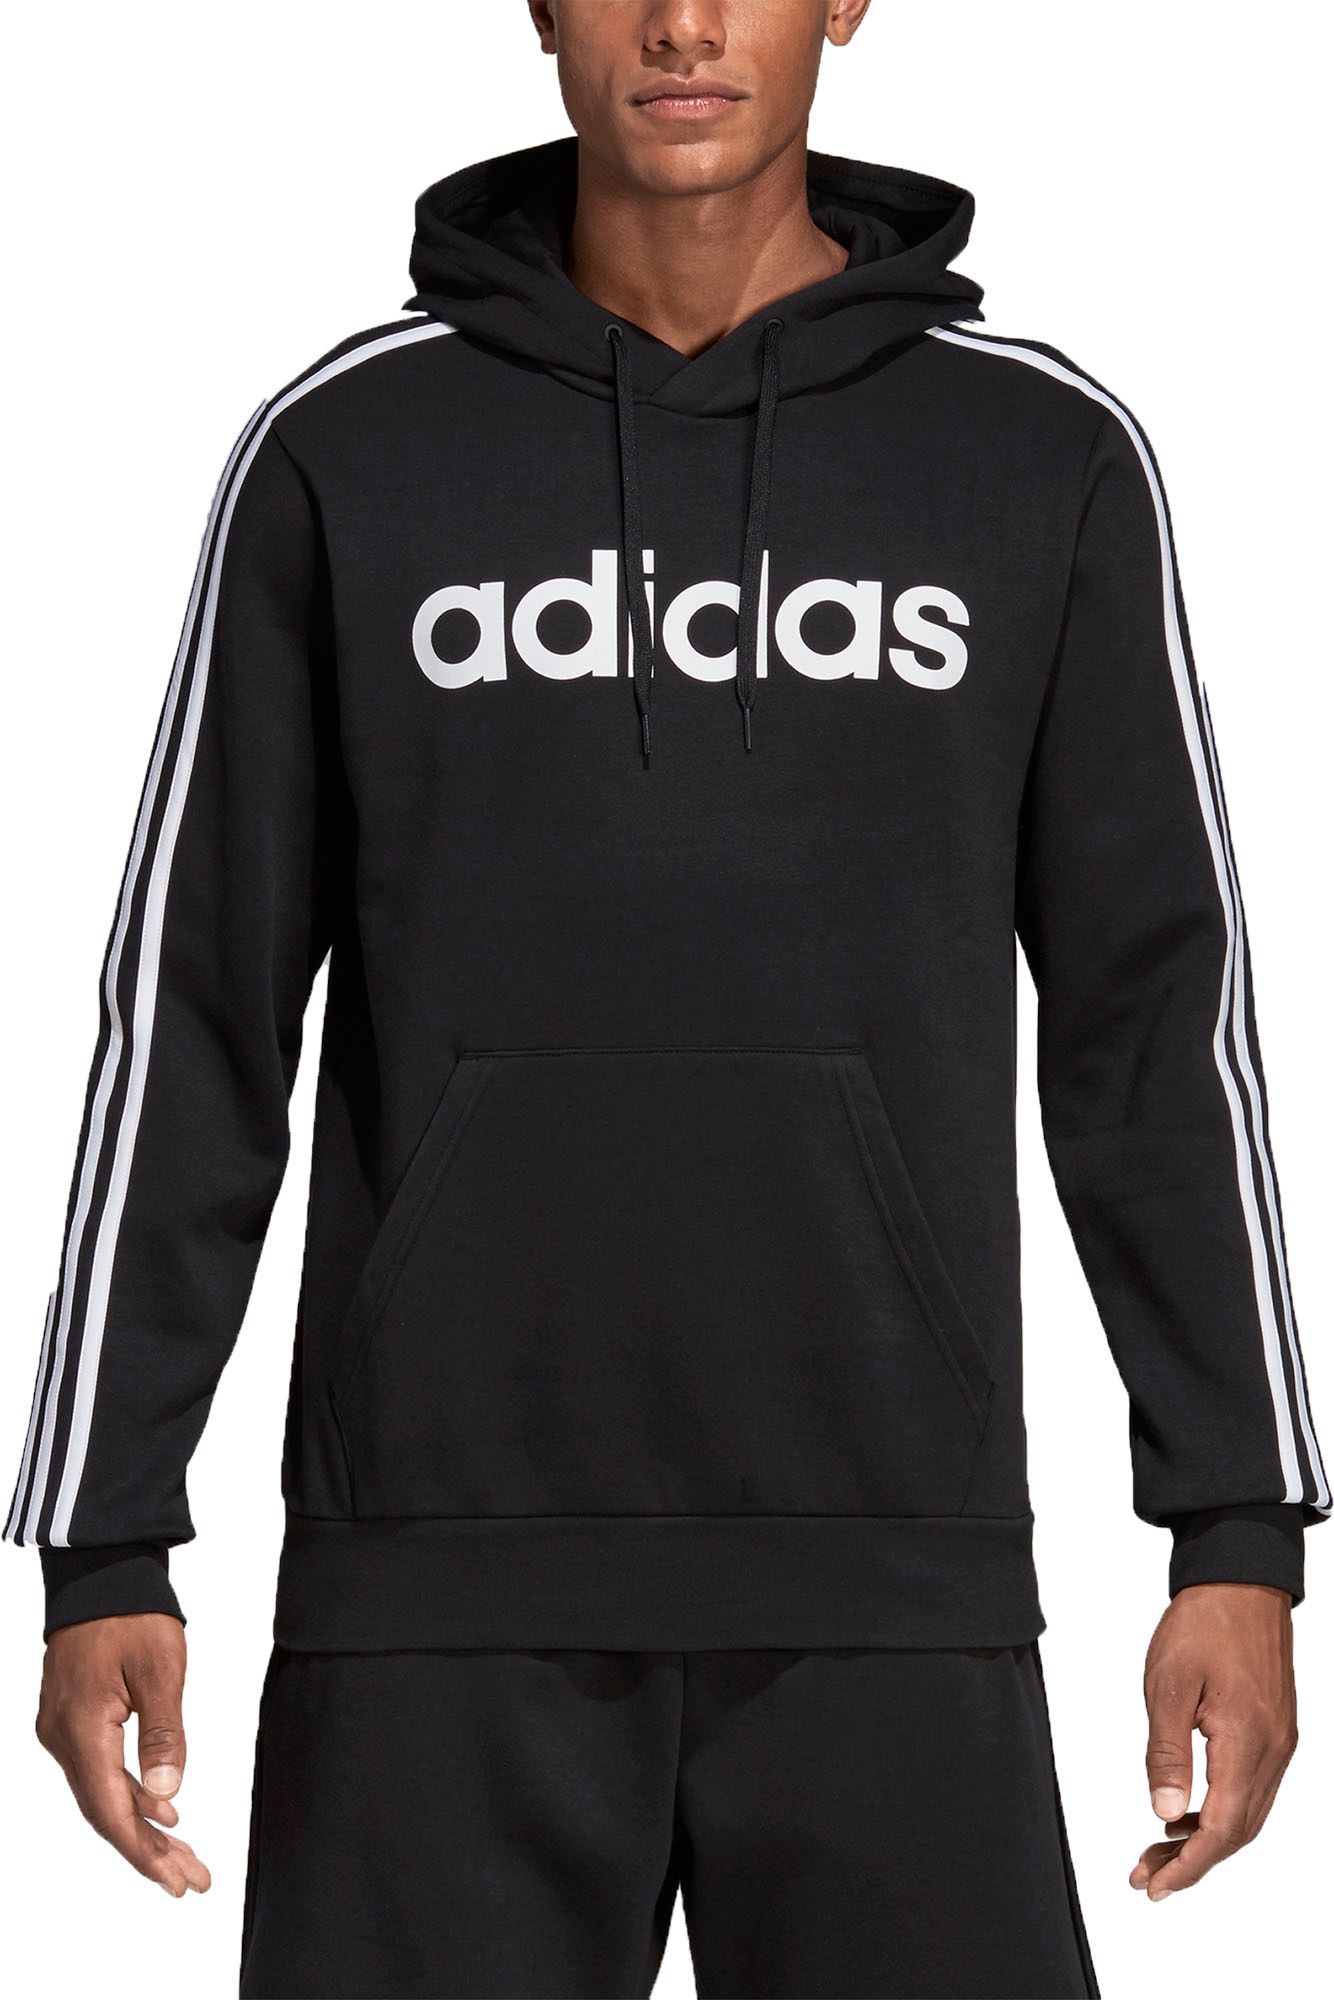 adidas black 3 stripe hoodie